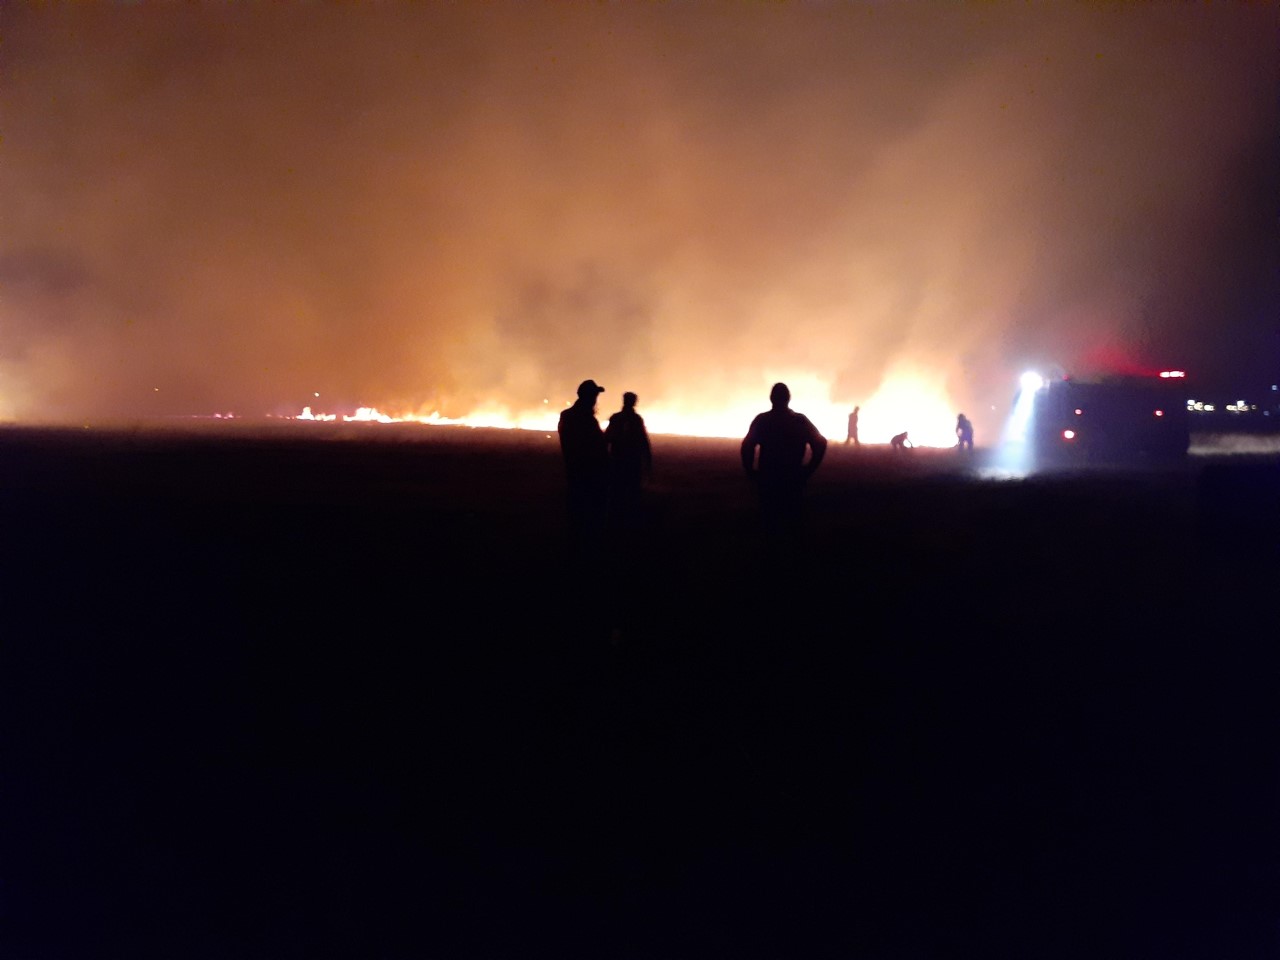 El incendio afectó 5 hectáreas en la zona rural de Regina. (Foto Pablo Accinelli)